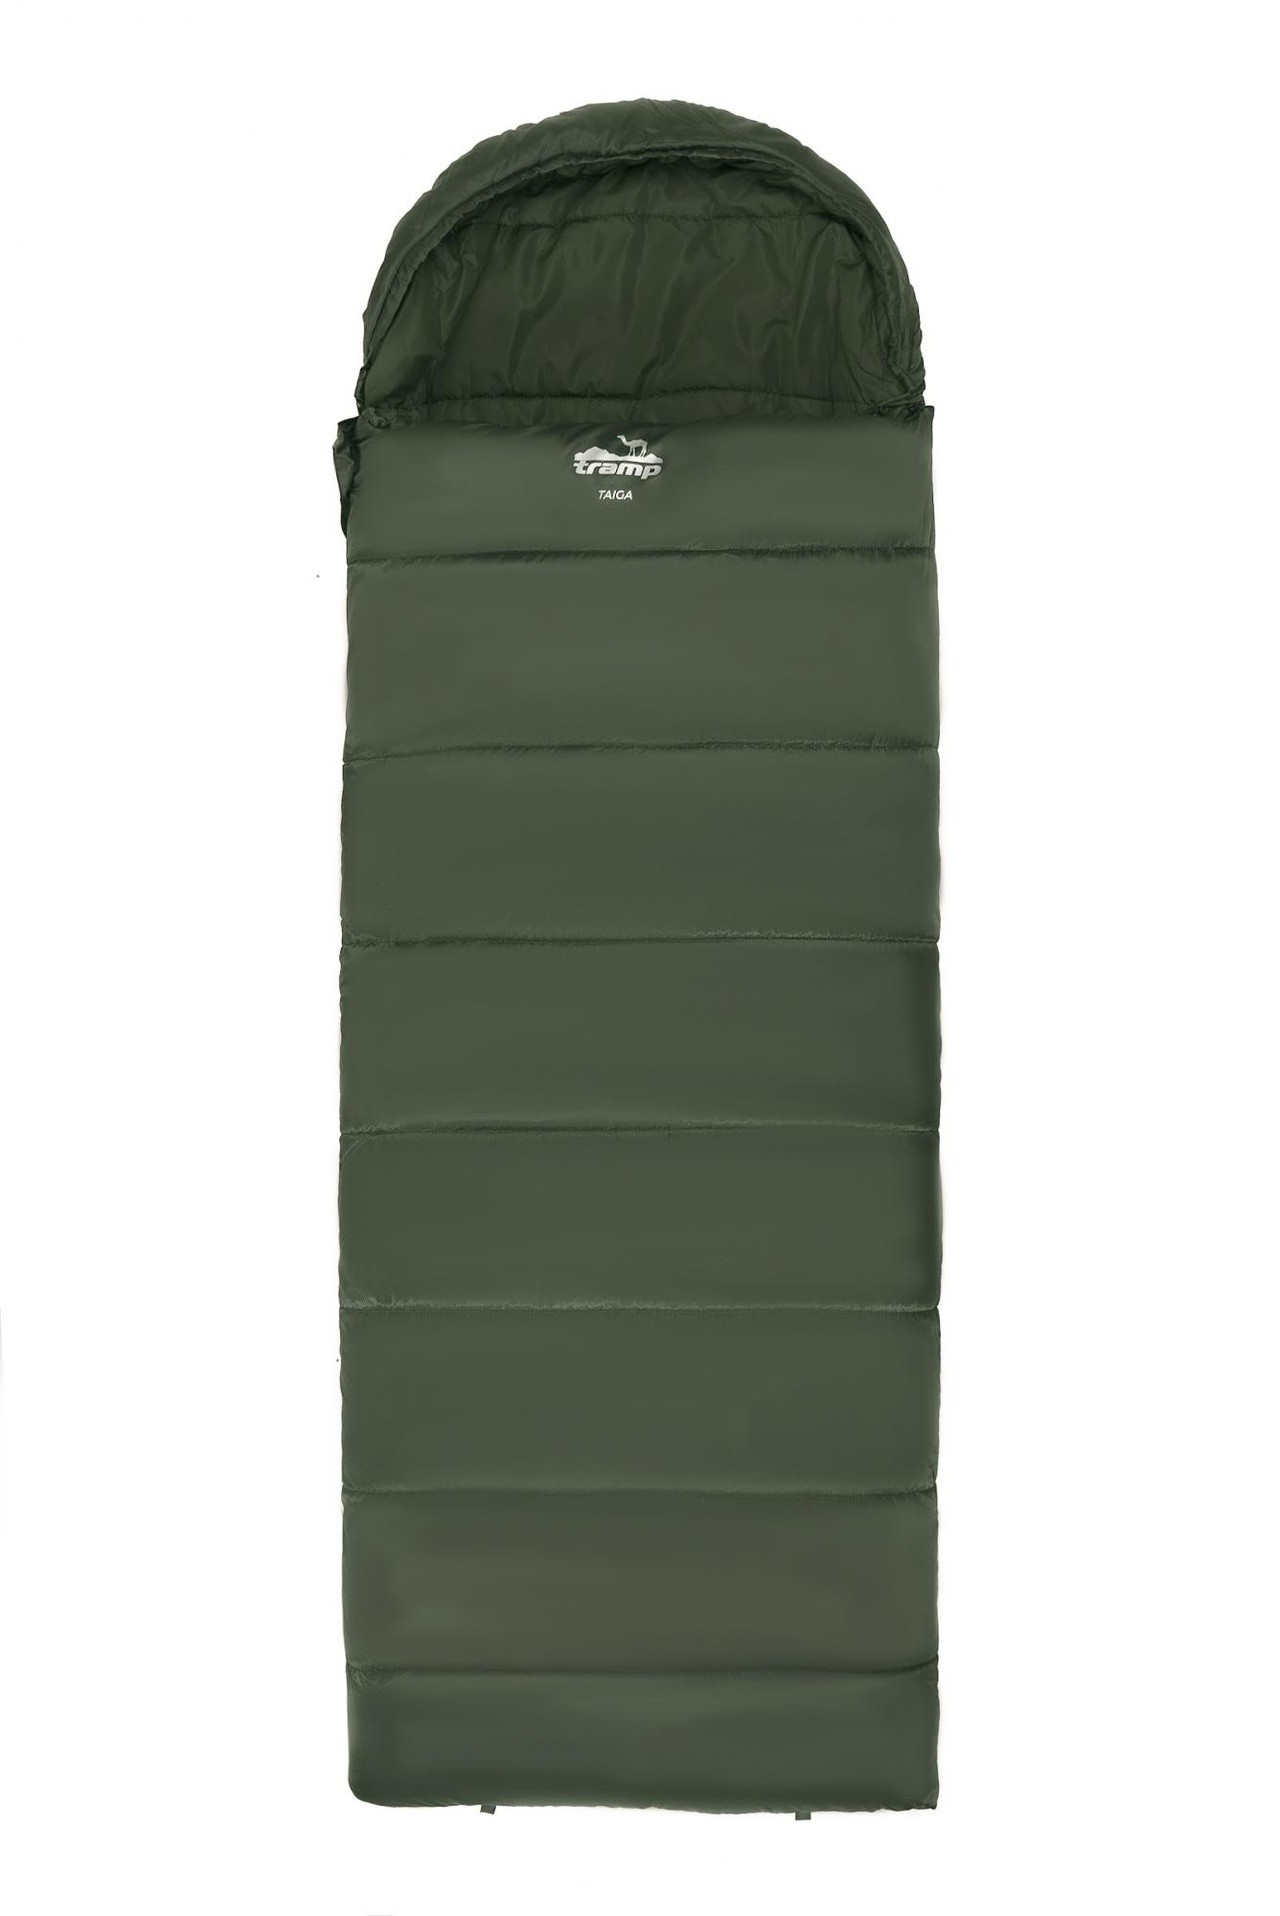 Спальный мешок одеяло Tramp Taiga 400 220*80 см (-10°C) - фото